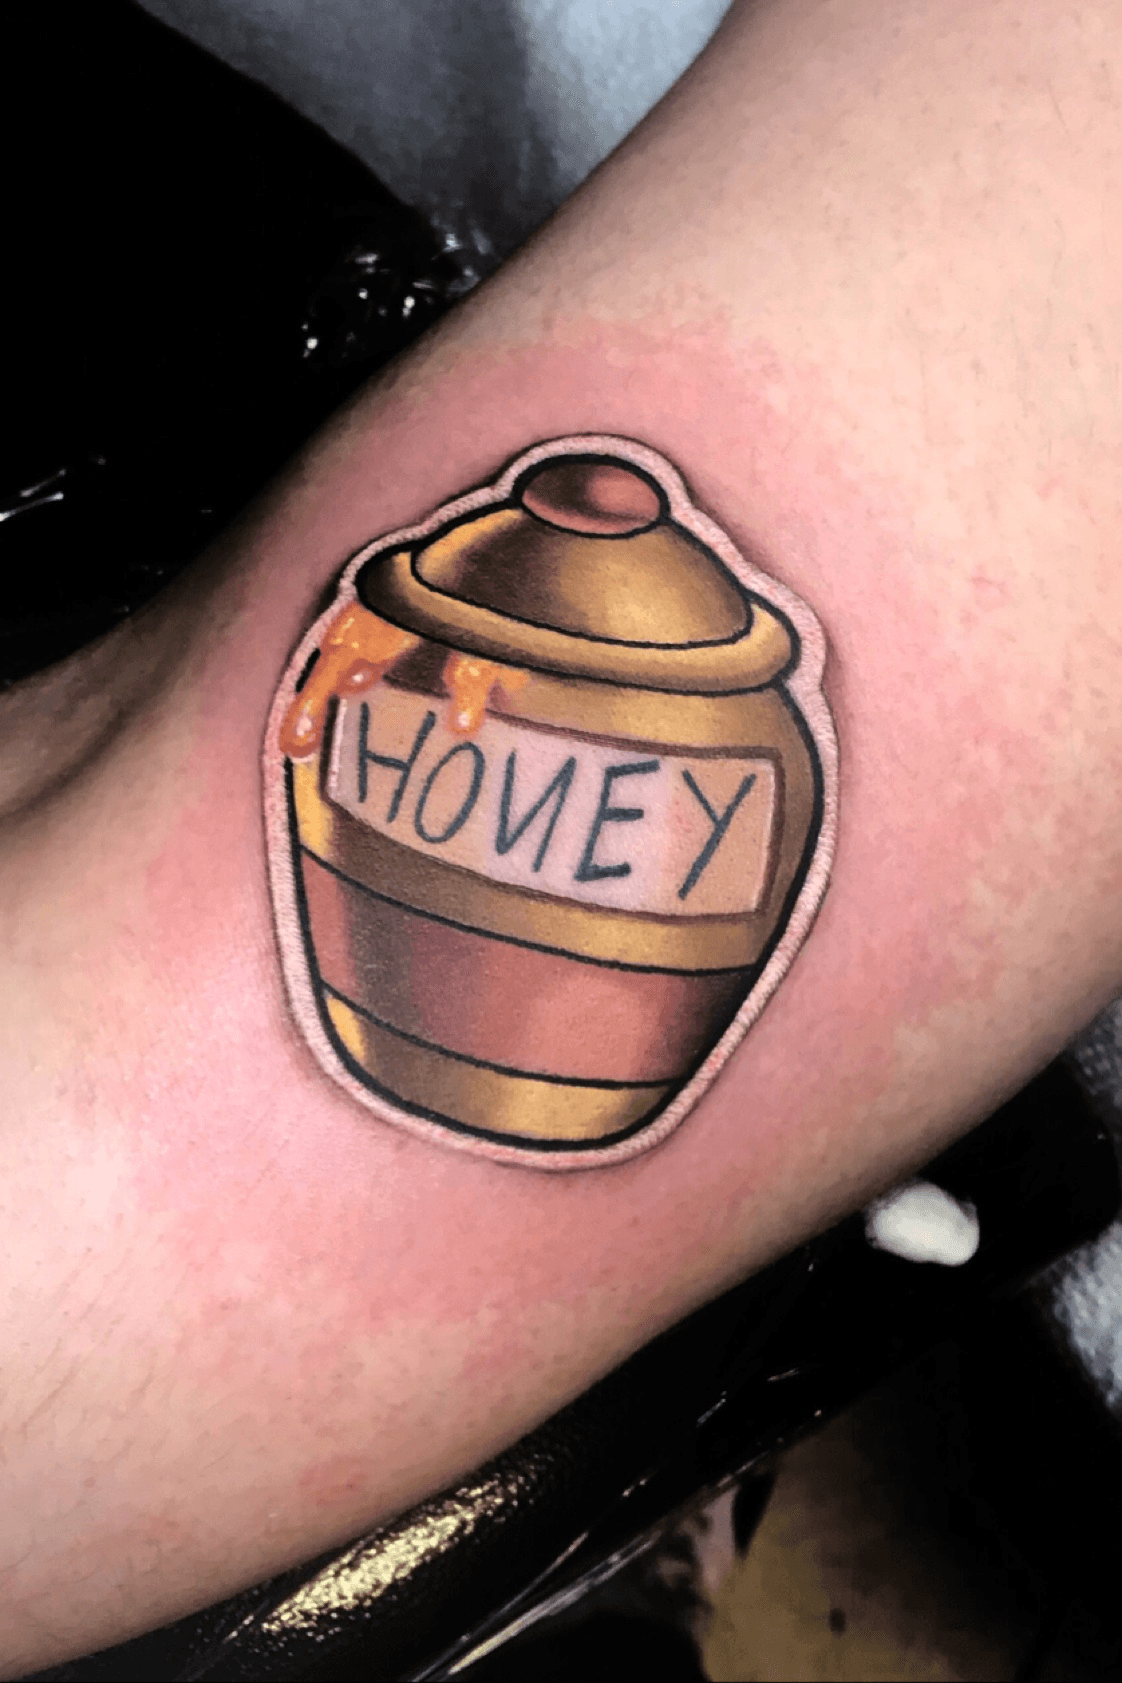 Cute little honey pot tattoo today   Lemon Boy Tattoos  Facebook